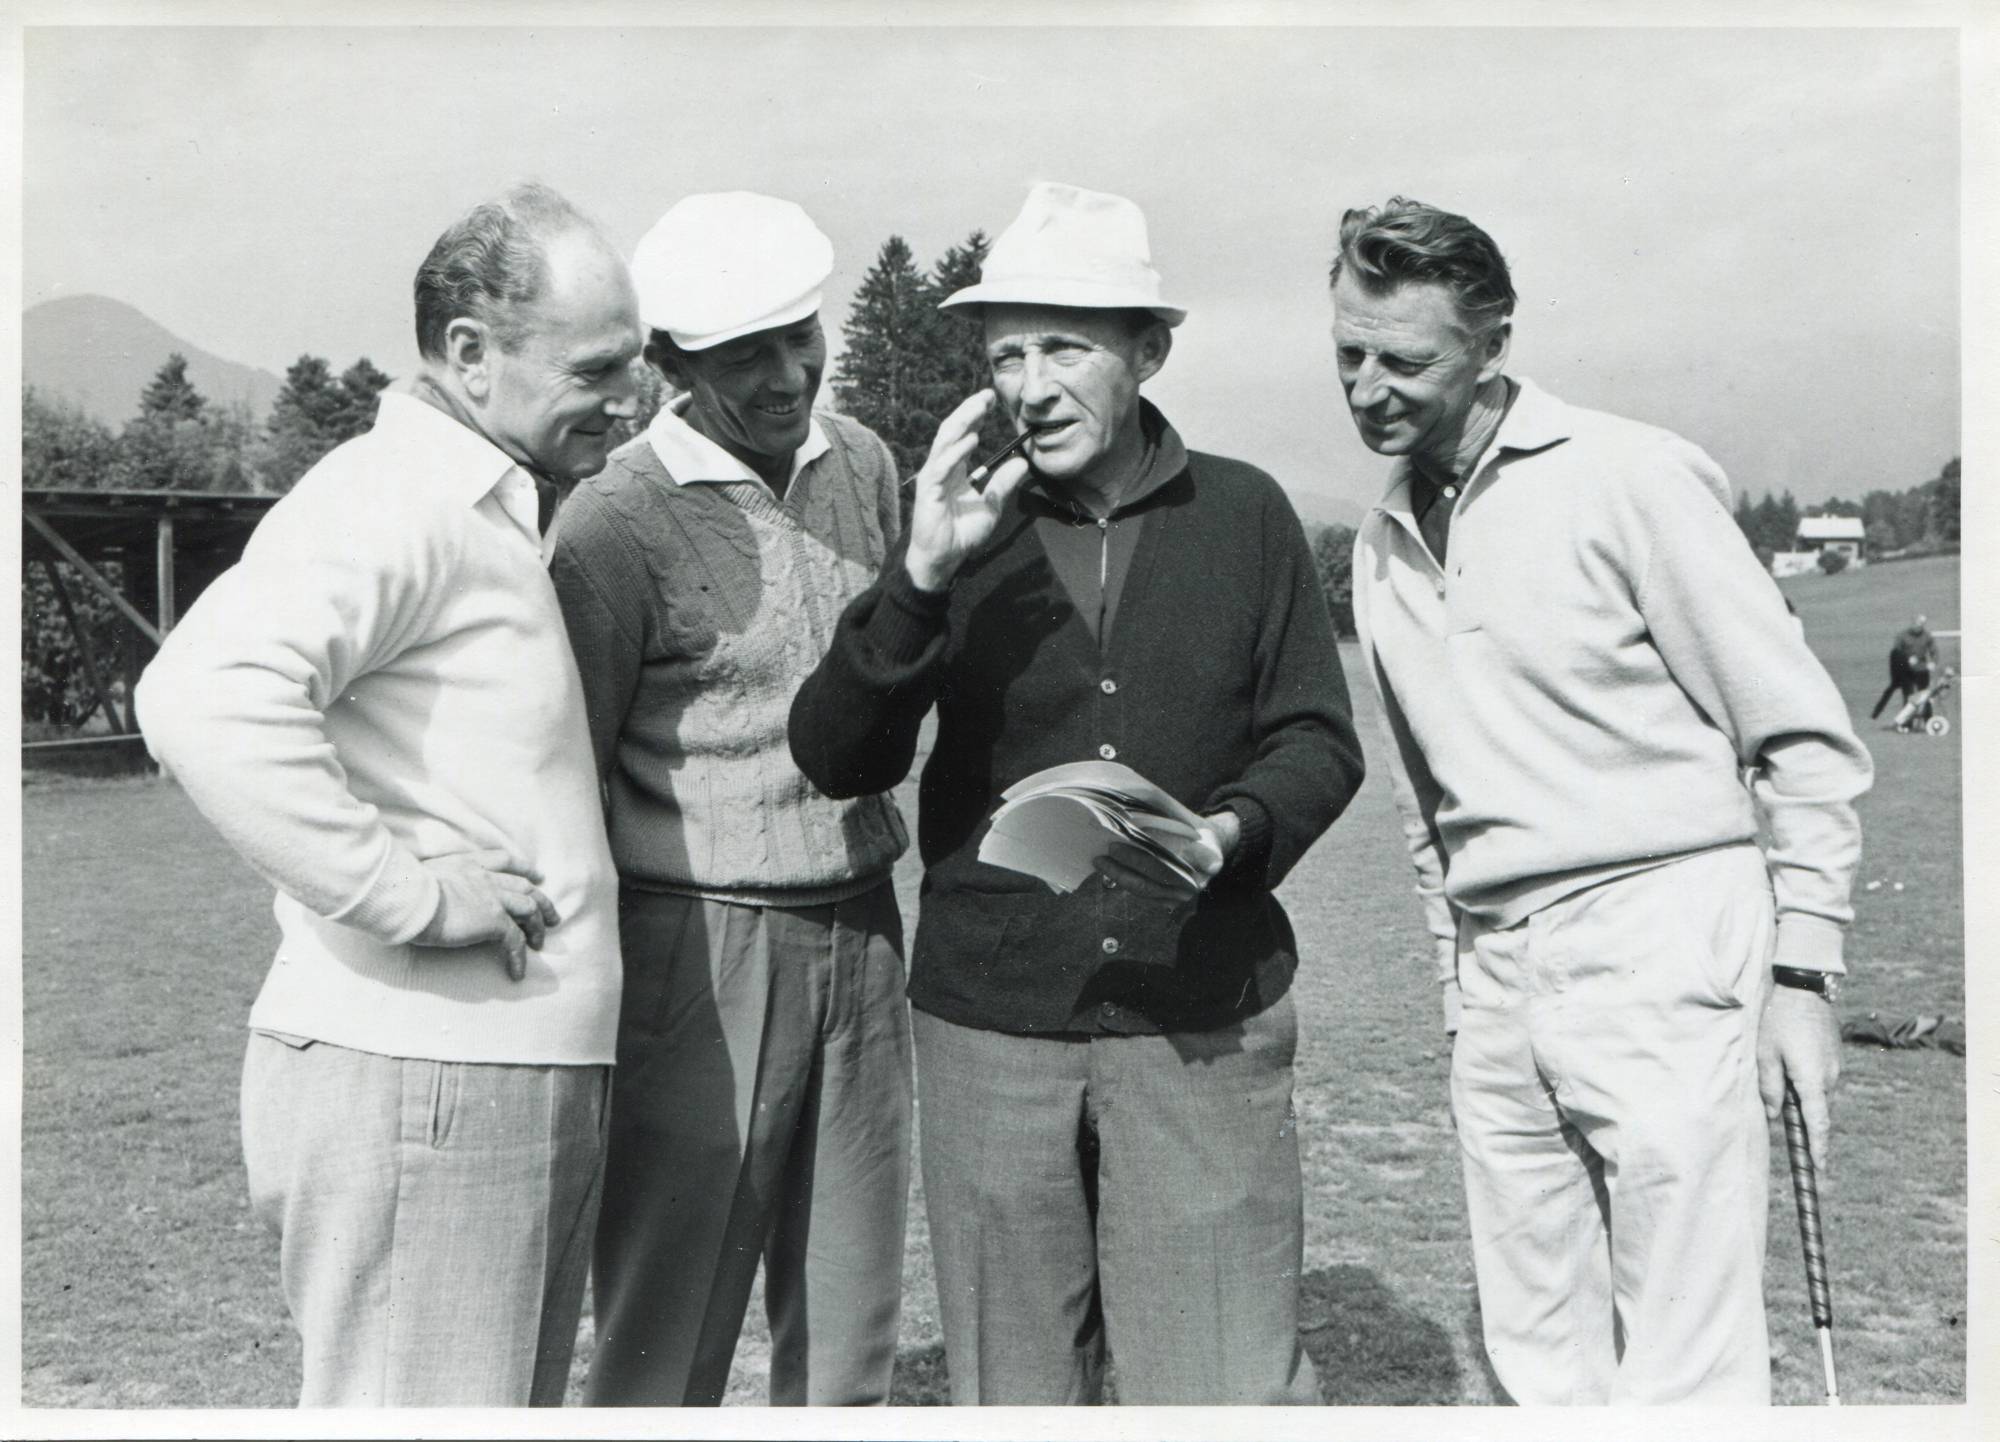 Seit 1955 spielt Harrer außerdem Golf. 1958 wird er österreichischer Golfmeister. Auf dem Golfplatz lernt er nicht nur zahlreiche internationale Berühmtheiten kennen, sondern auch seine dritte Frau Carina. Am Bild zu sehen: Heinrich Harrer beim Golfen mit Bing Crosby, Kitzbühel Ende 1950er Jahre.